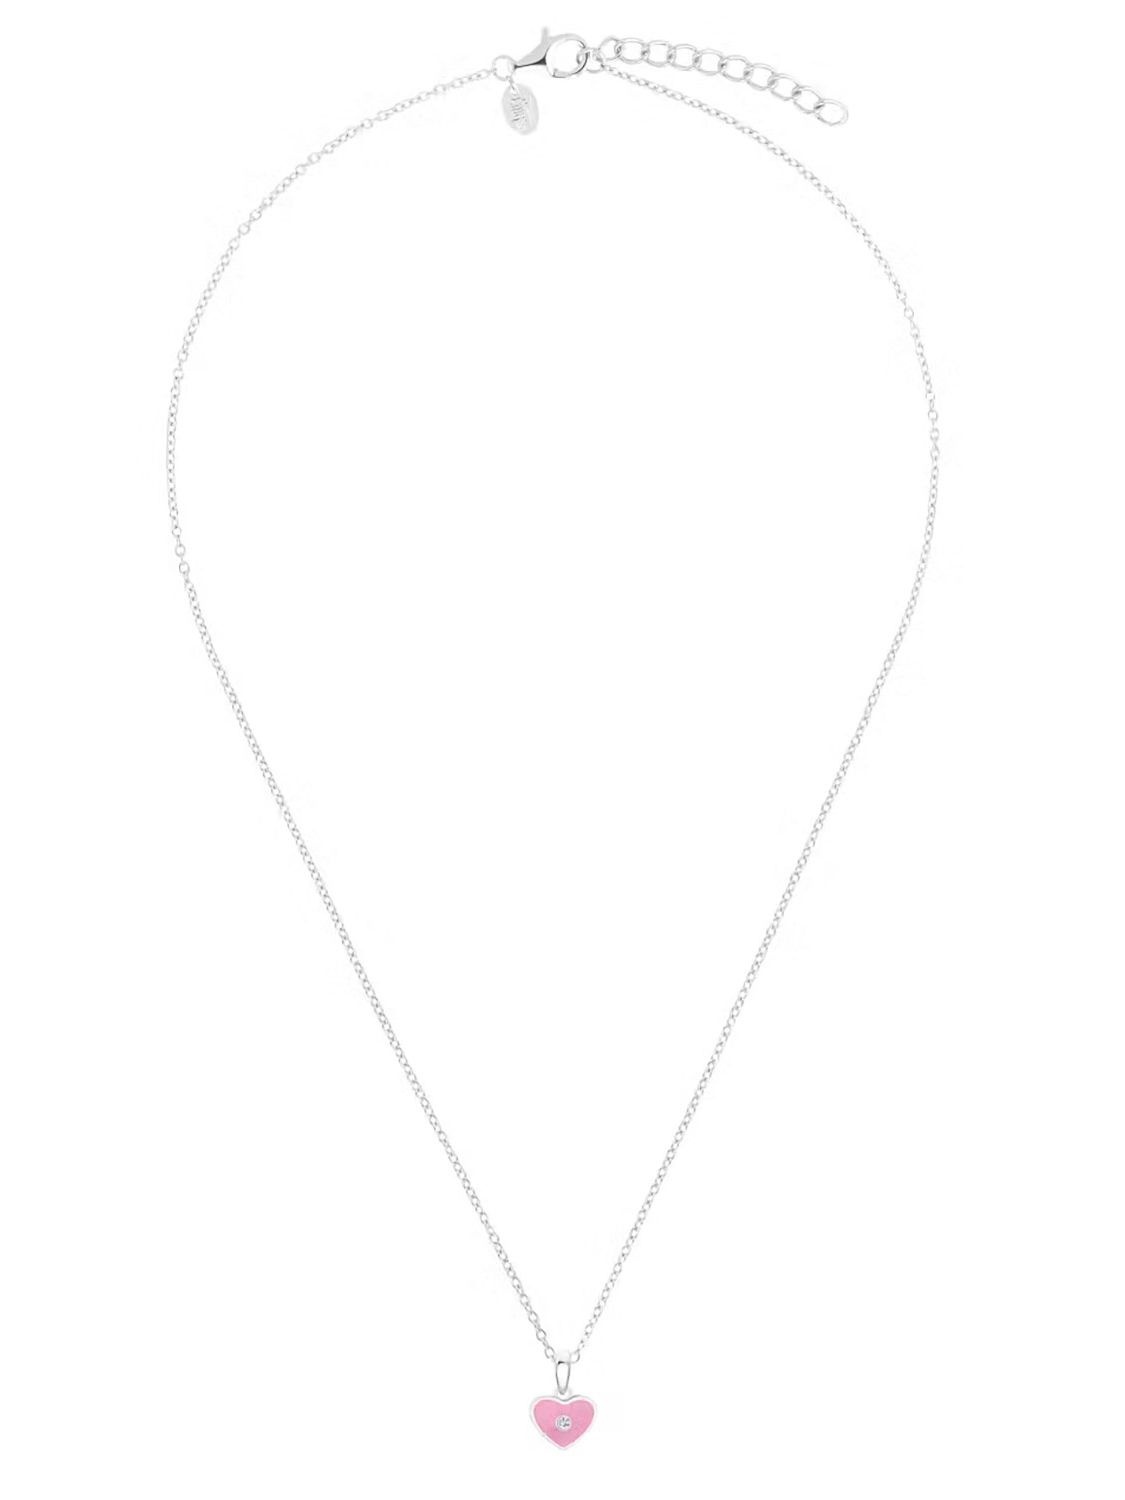 Prinzessin Lillifee Silber-Halskette für Kinder mit Herz-Anhänger 2035981